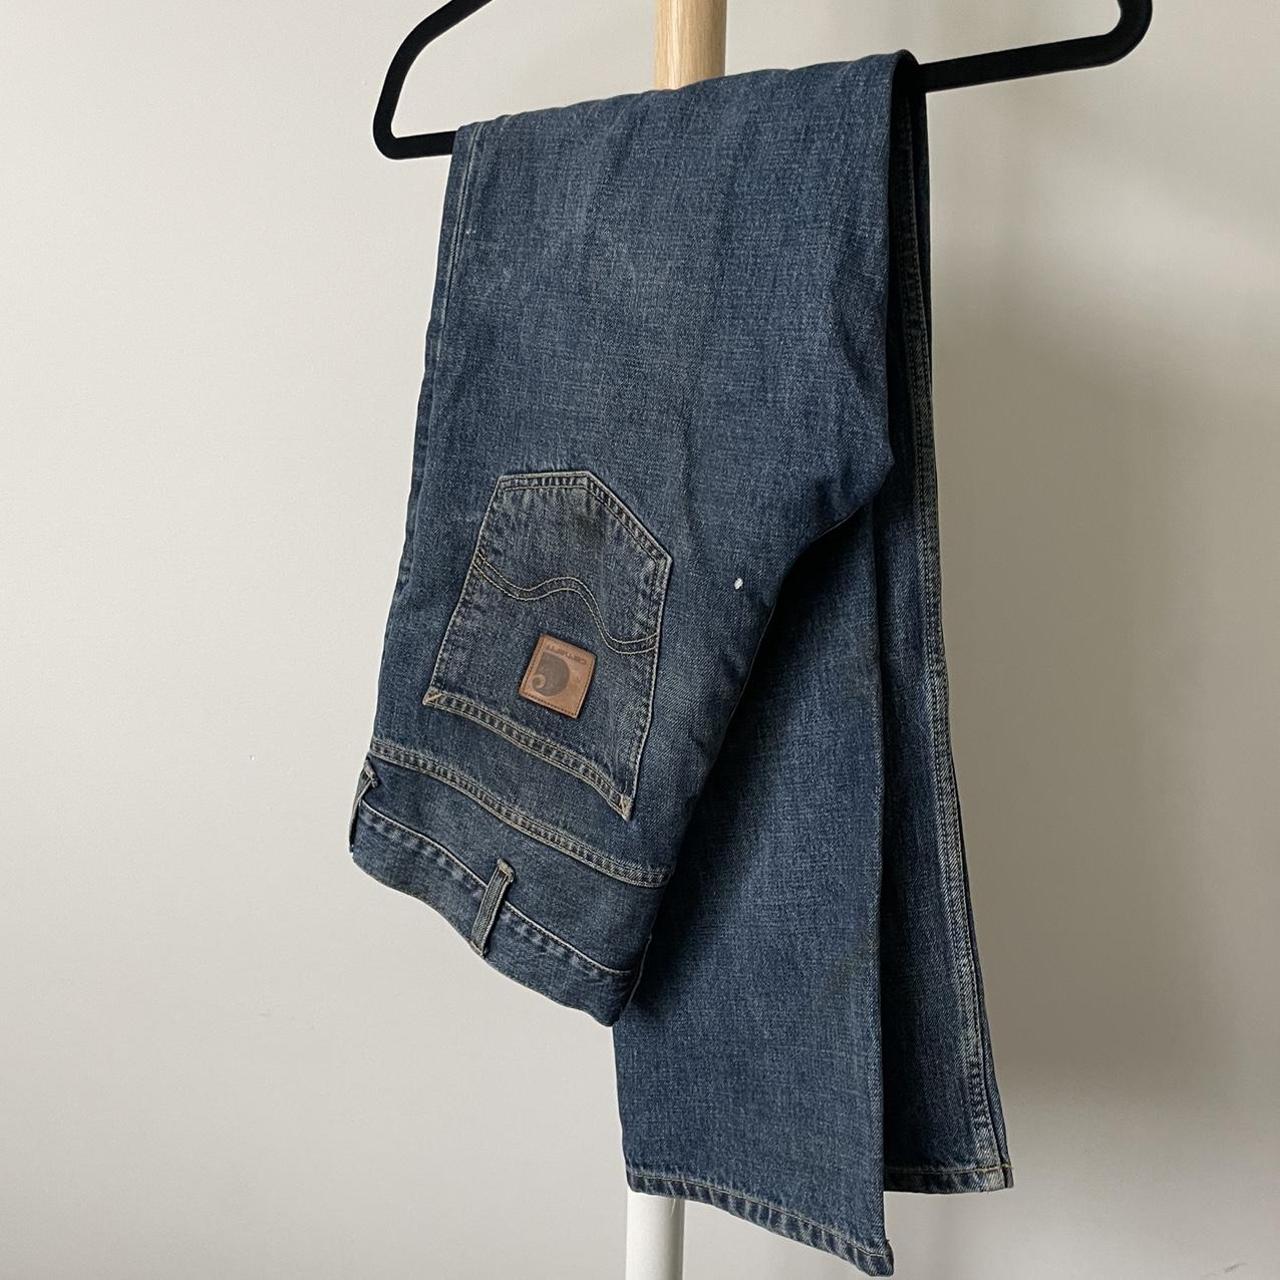 Carhartt Denim Jeans ( used as work jeans, very... - Depop